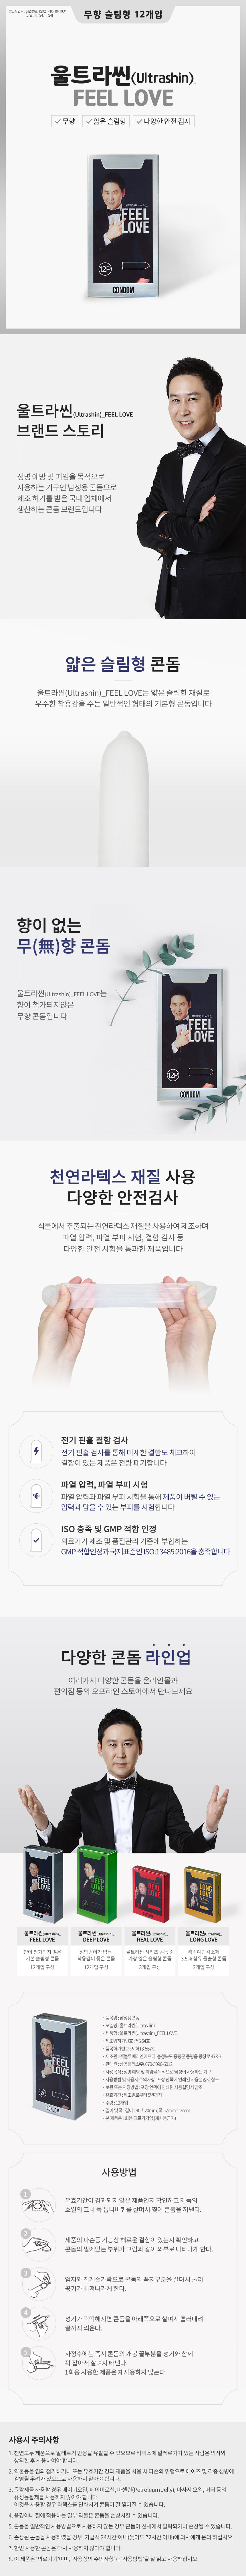 신동엽의 울트라씬 필러브 12p - 올인원 초박형 콘돔